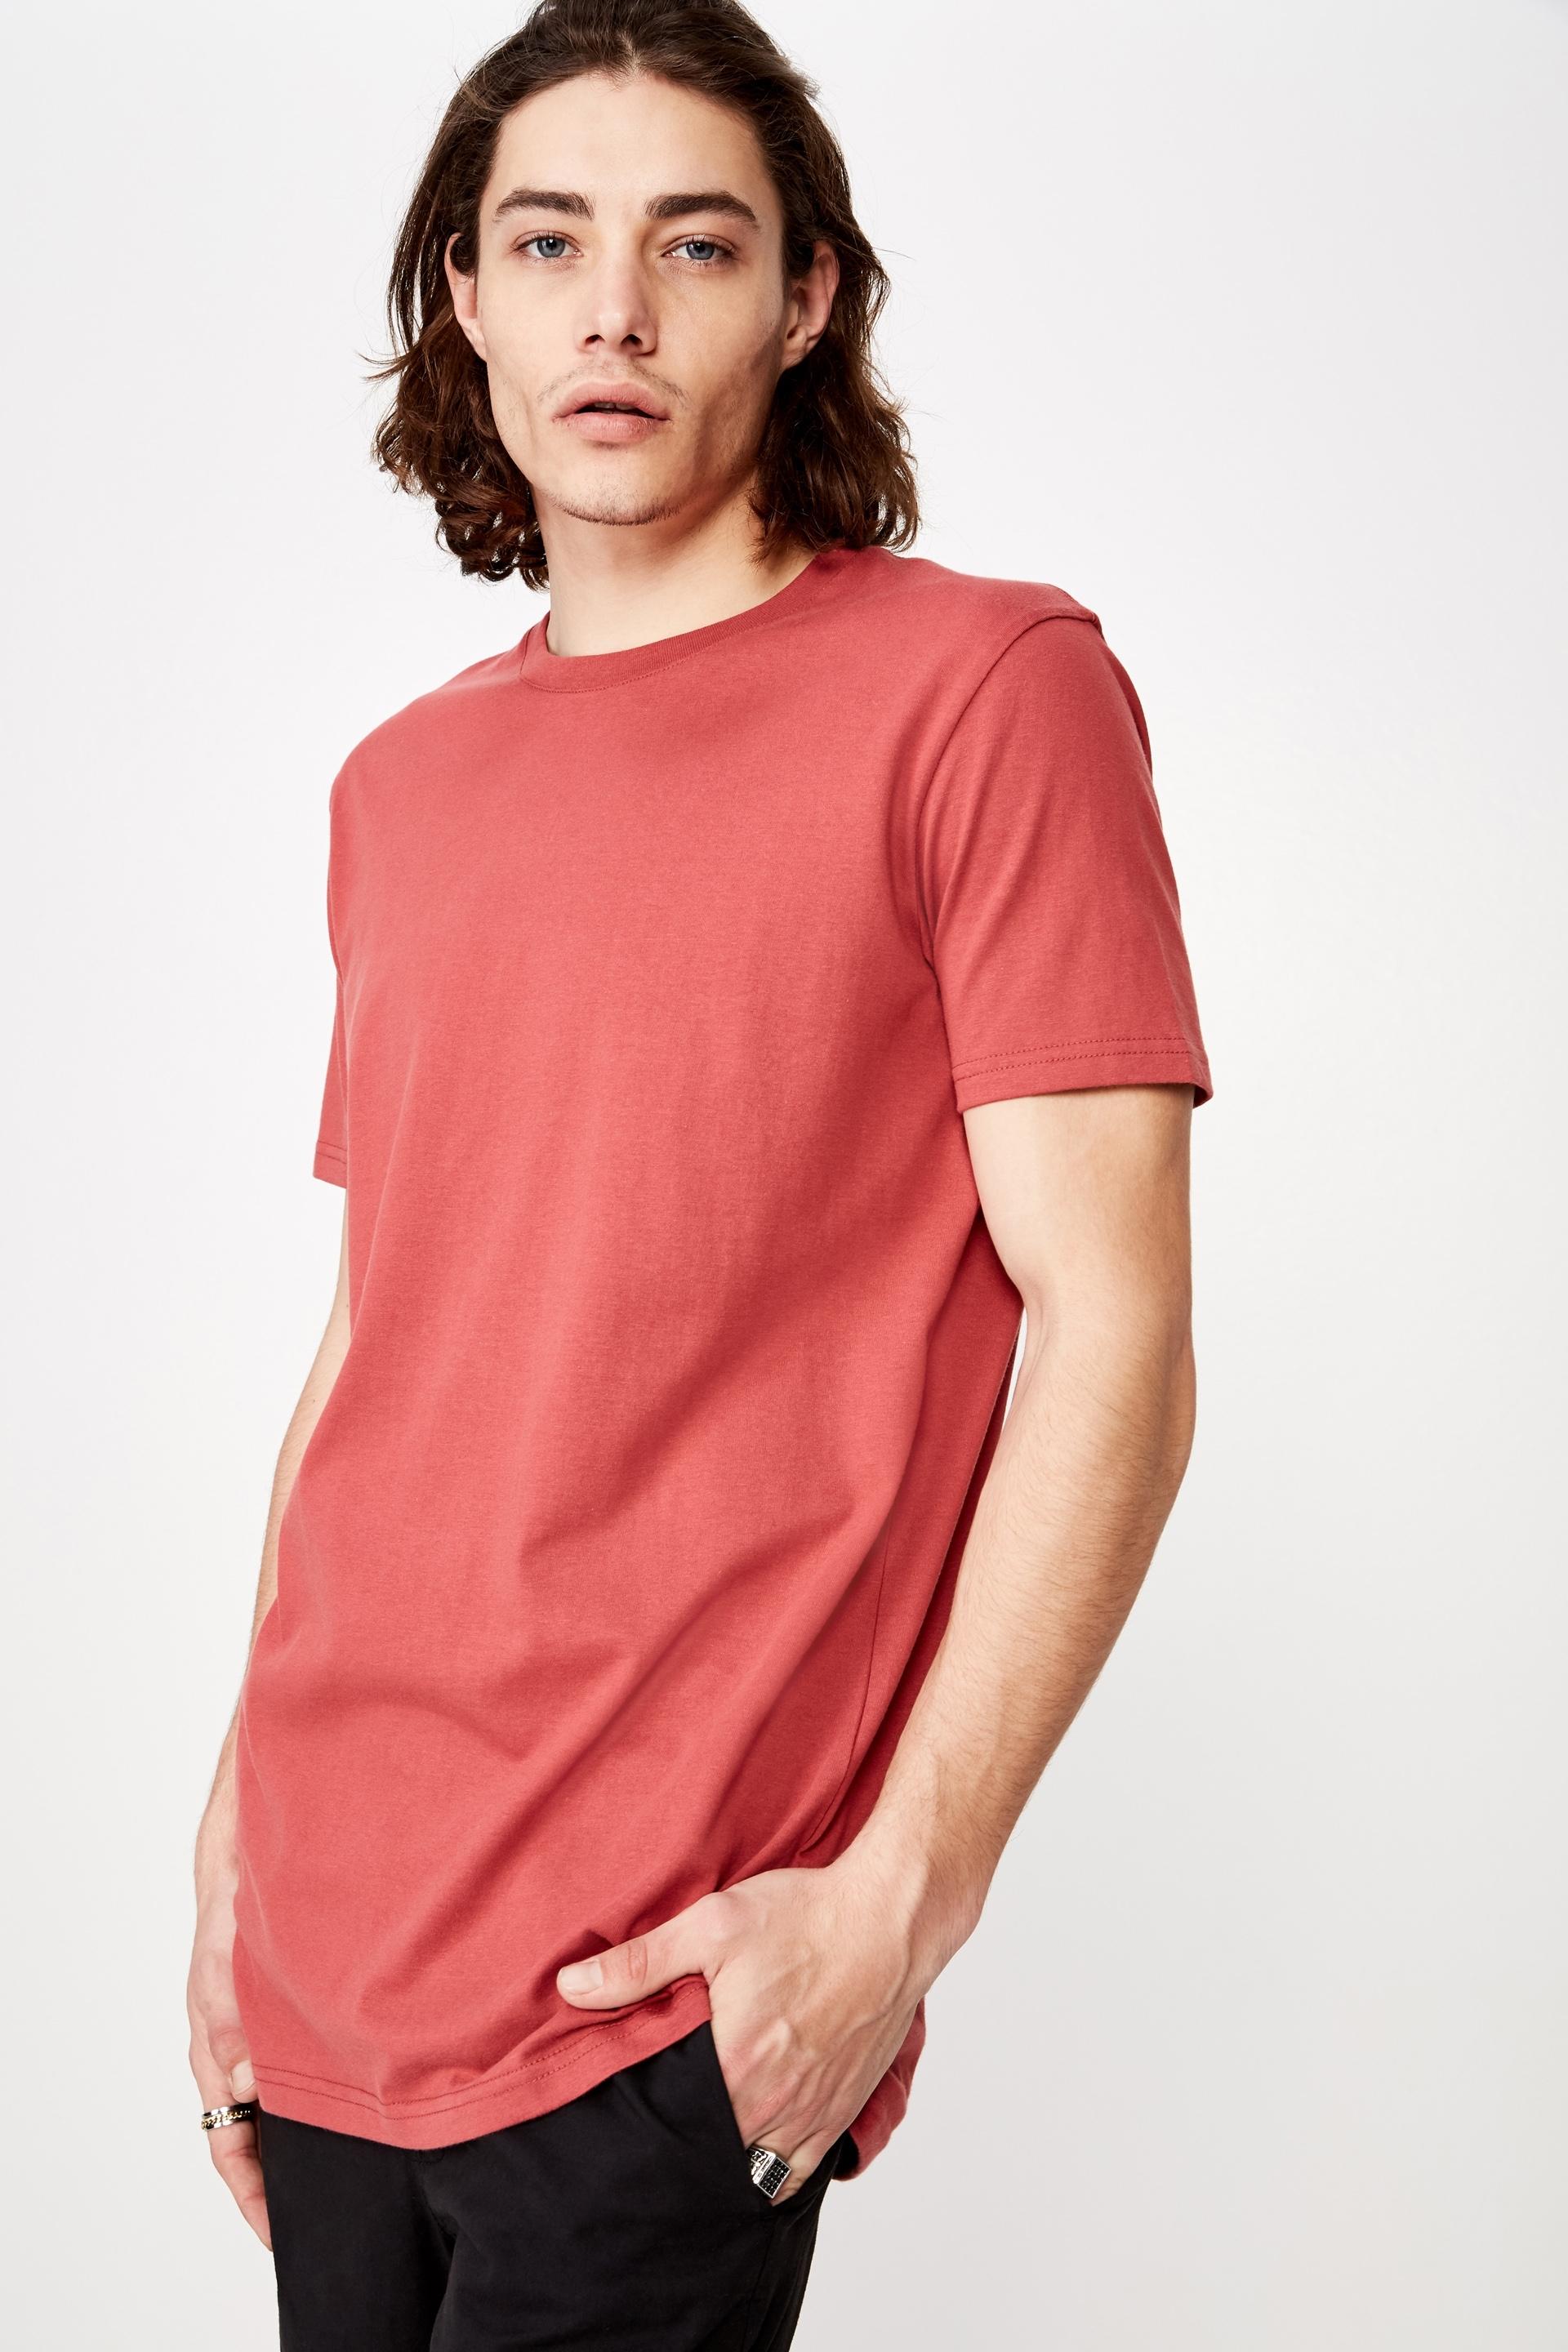 Longline t shirt - auburn Factorie T-Shirts & Vests | Superbalist.com